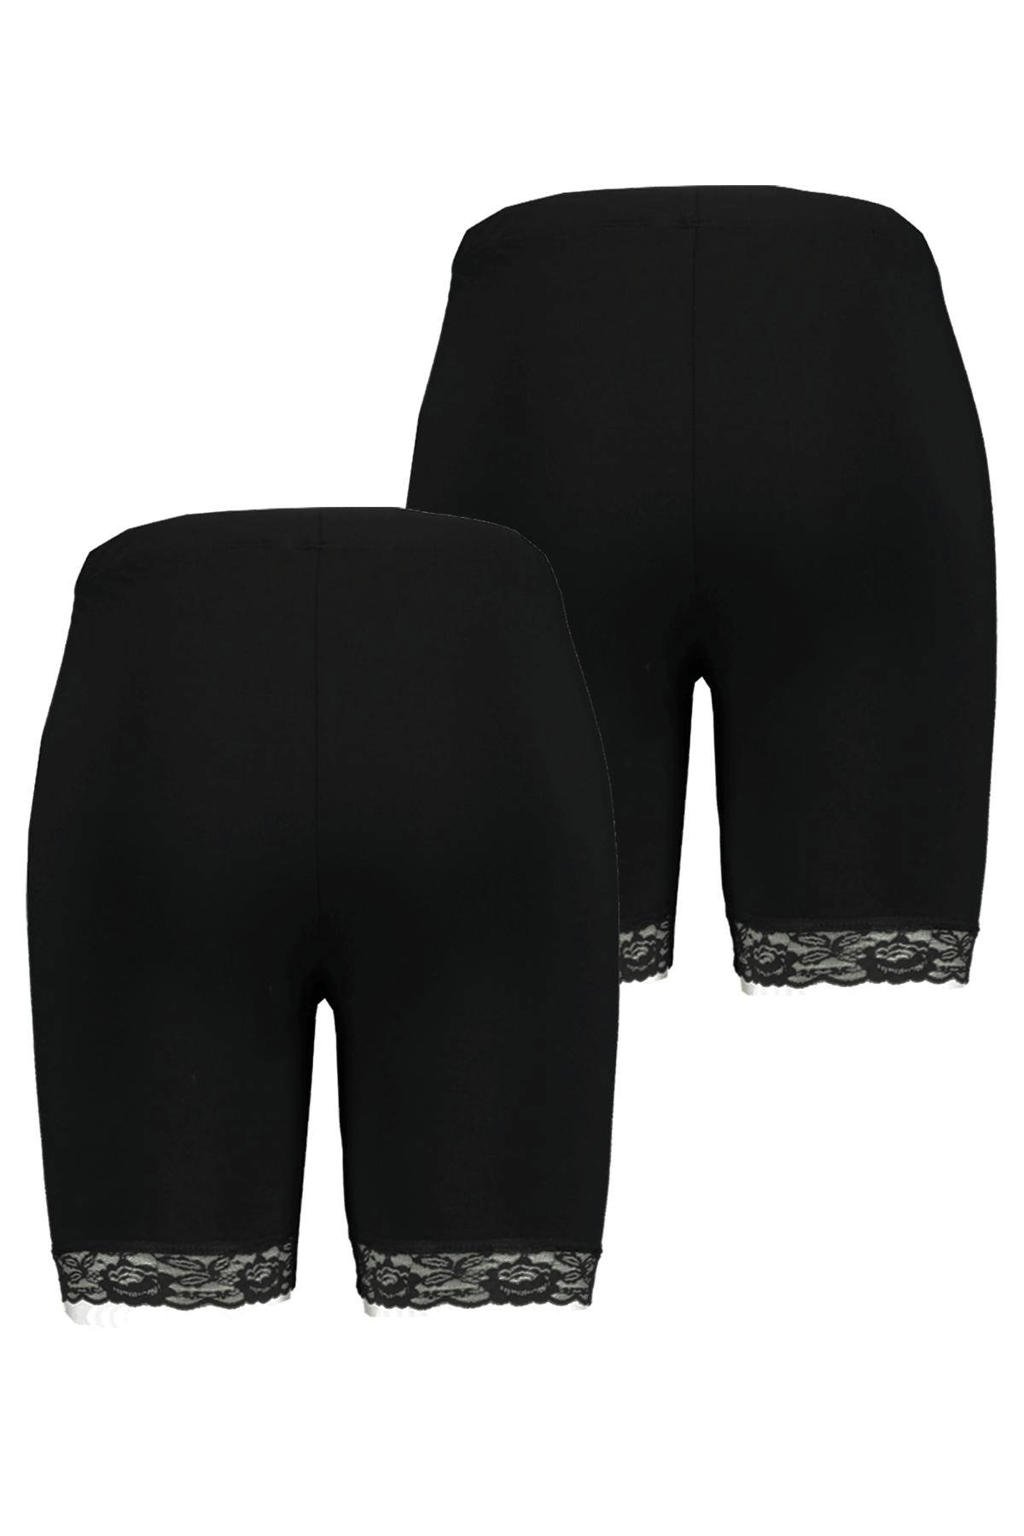 Set van 2 zwarte dames MS Mode Plus Size cycling short van katoen met skinny fit, regular waist en elastische tailleband